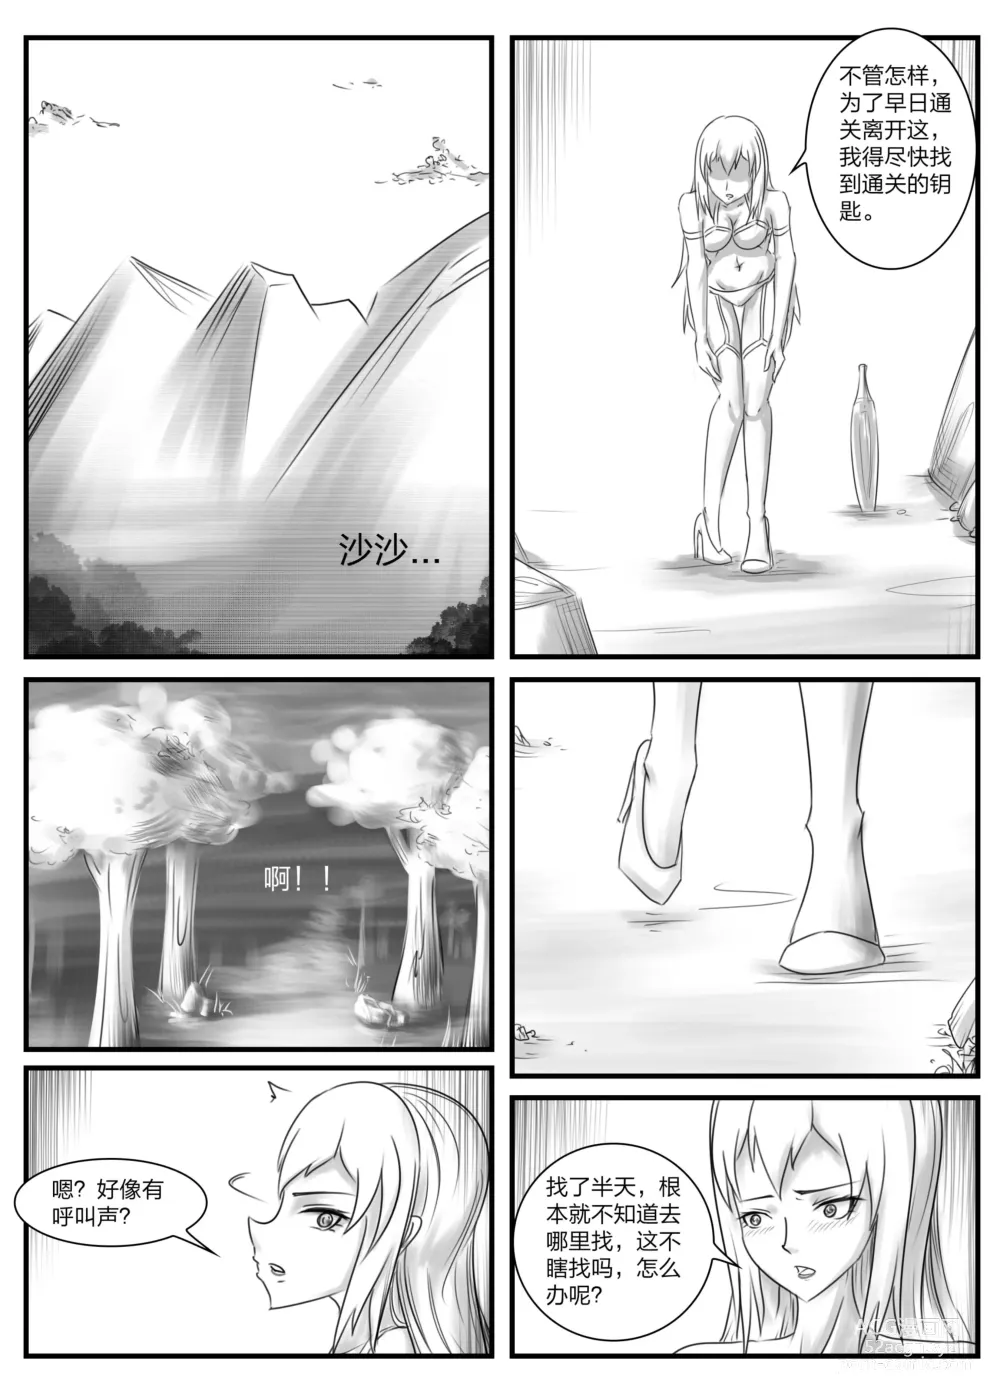 Page 15 of doujinshi 《被困游戏世界2》